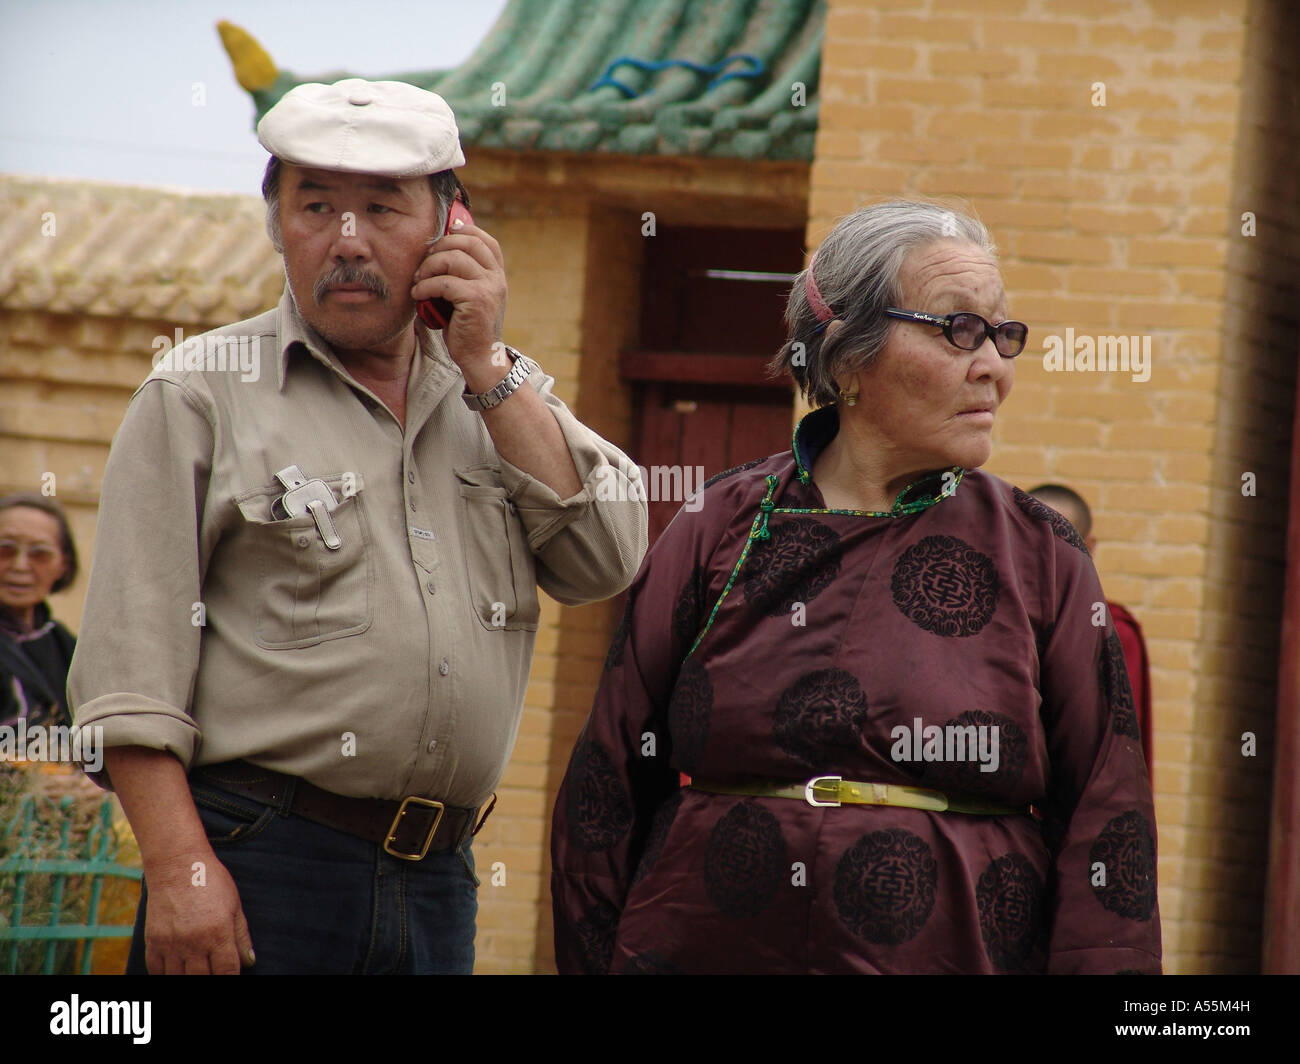 È Painet1472 mongolia anziani vecchia coppia monastero gandan ulaan baatur uomo parla cellulare paese nazione in via di sviluppo meno Foto Stock